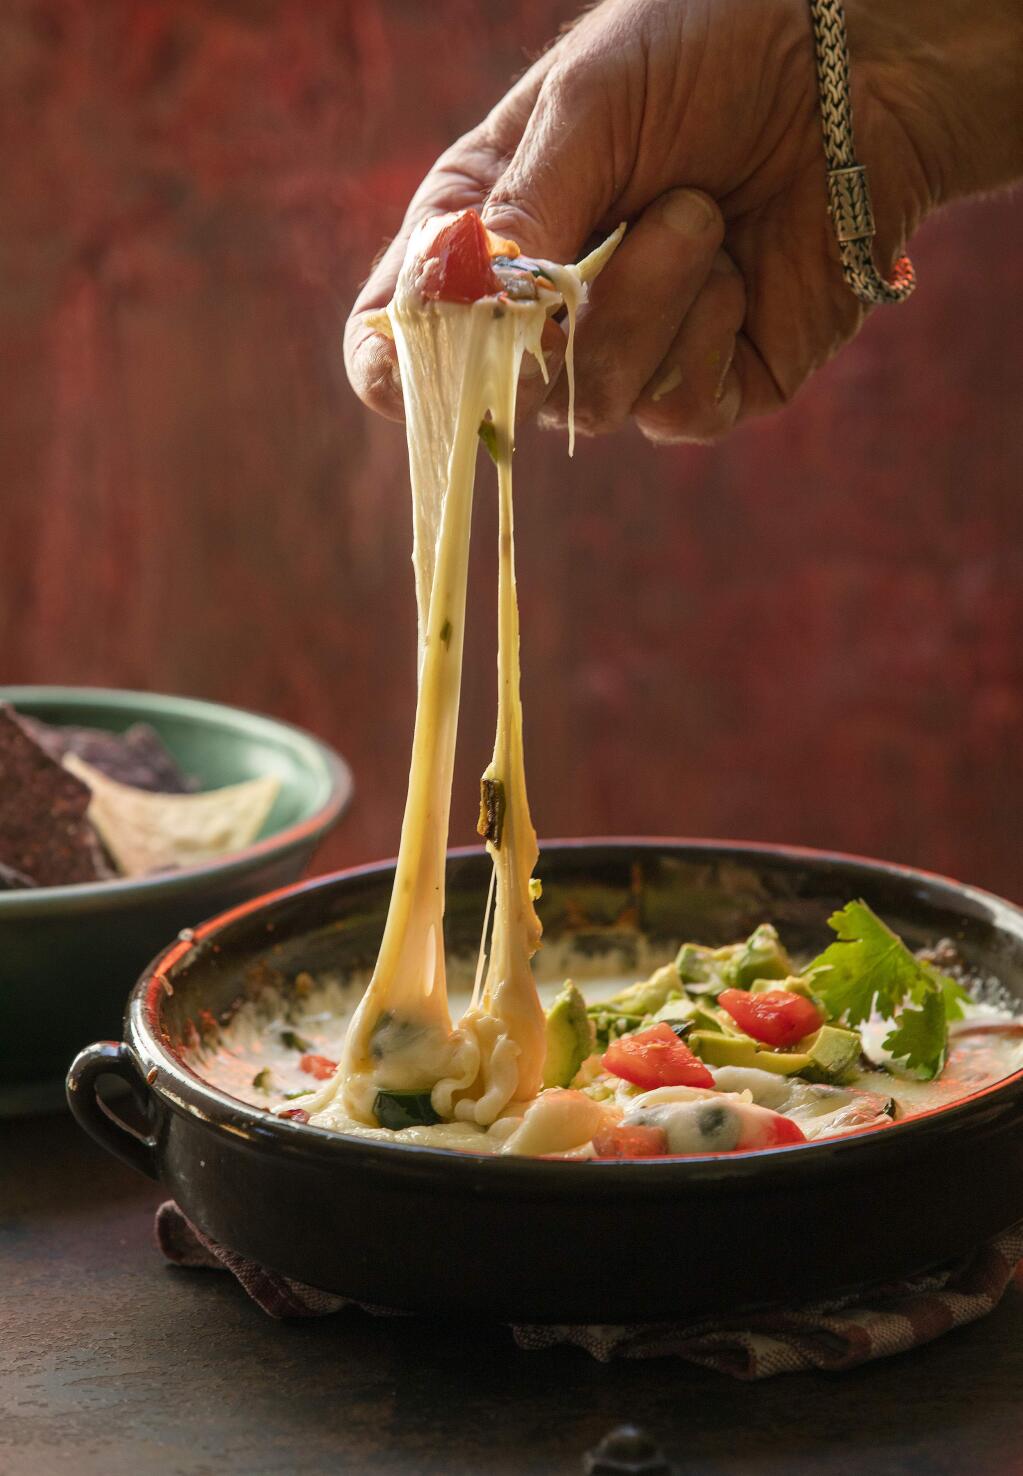 Fundido con queso, a Mexican fondue with tomatillo salsa,from Chef John Ash. (John Burgess/The Press Democrat)